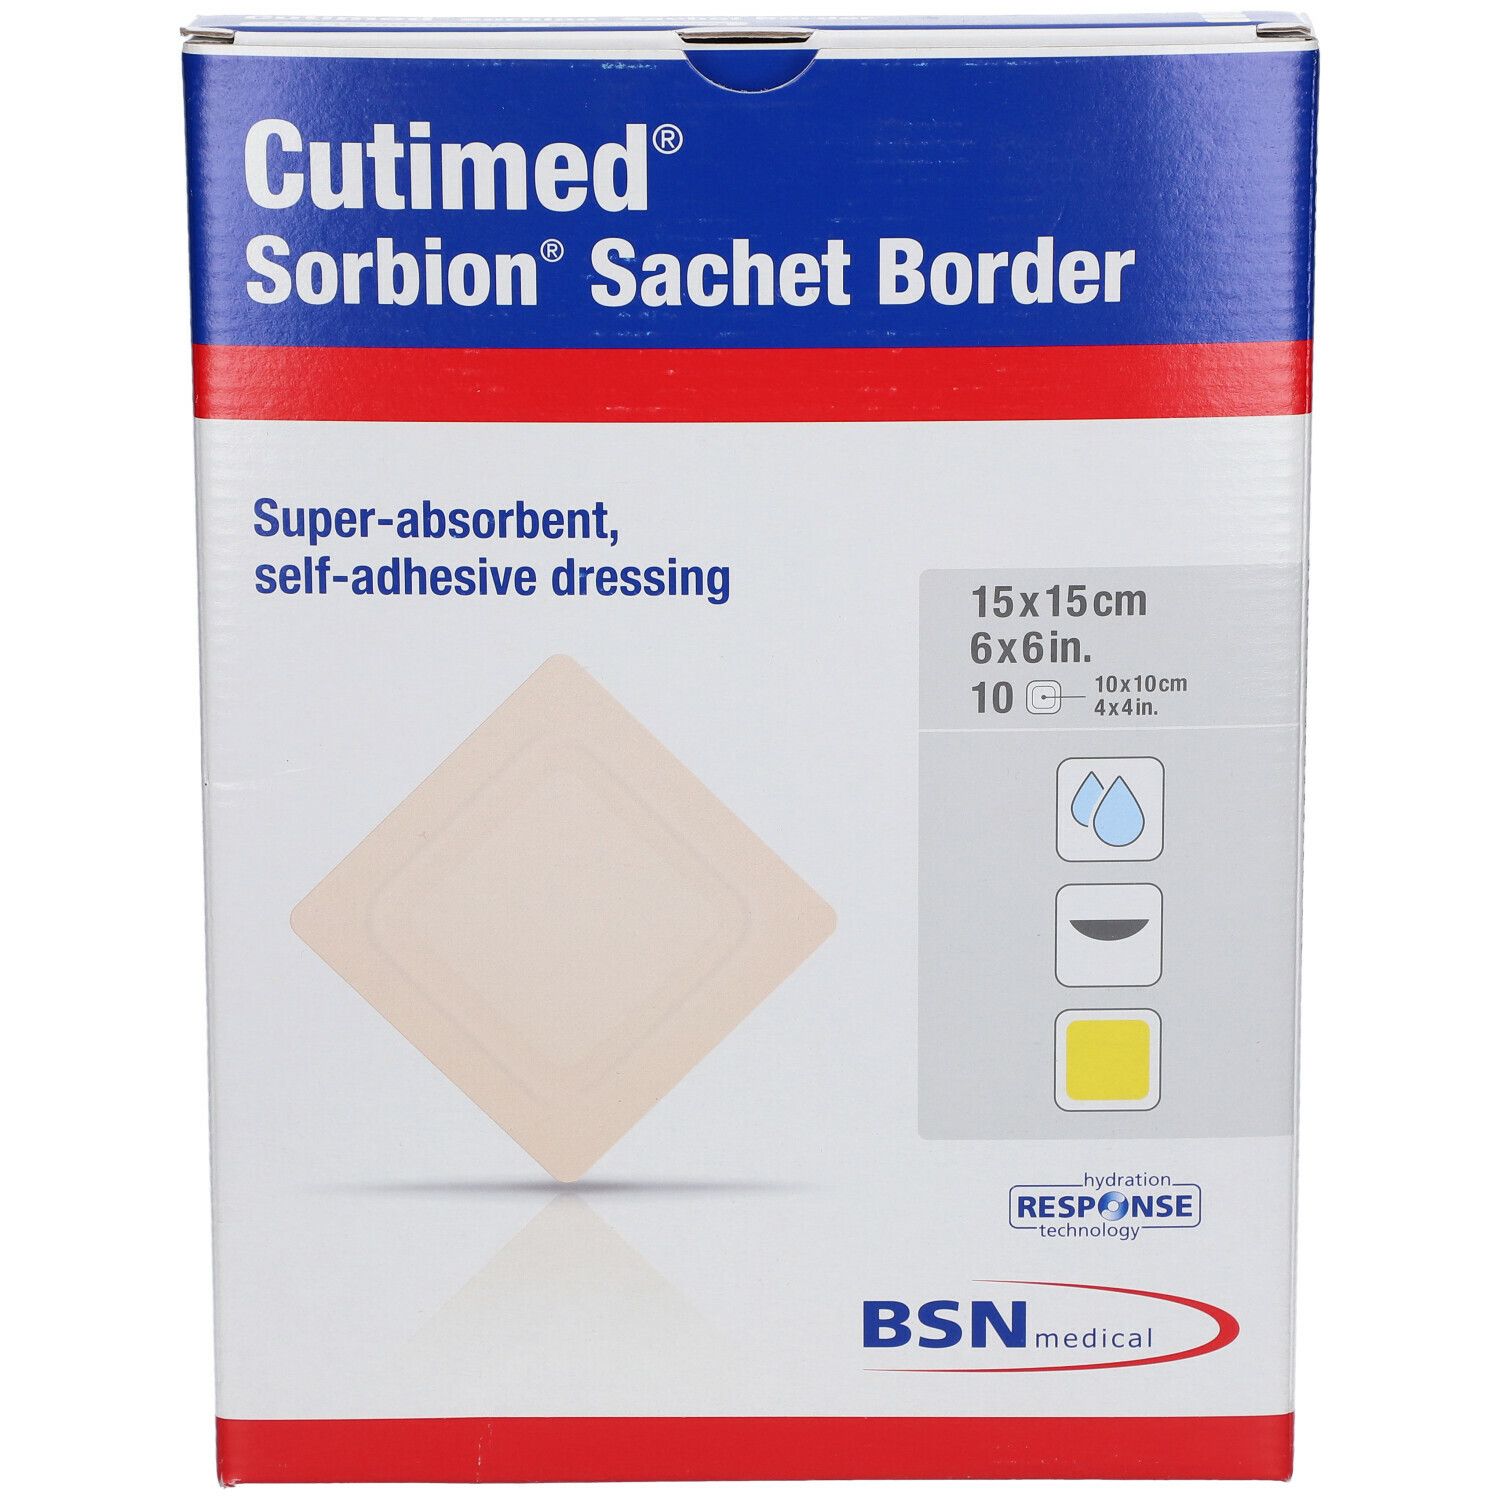 Cutimed® Sorbion Sachet Border 15 cm x 15 cm